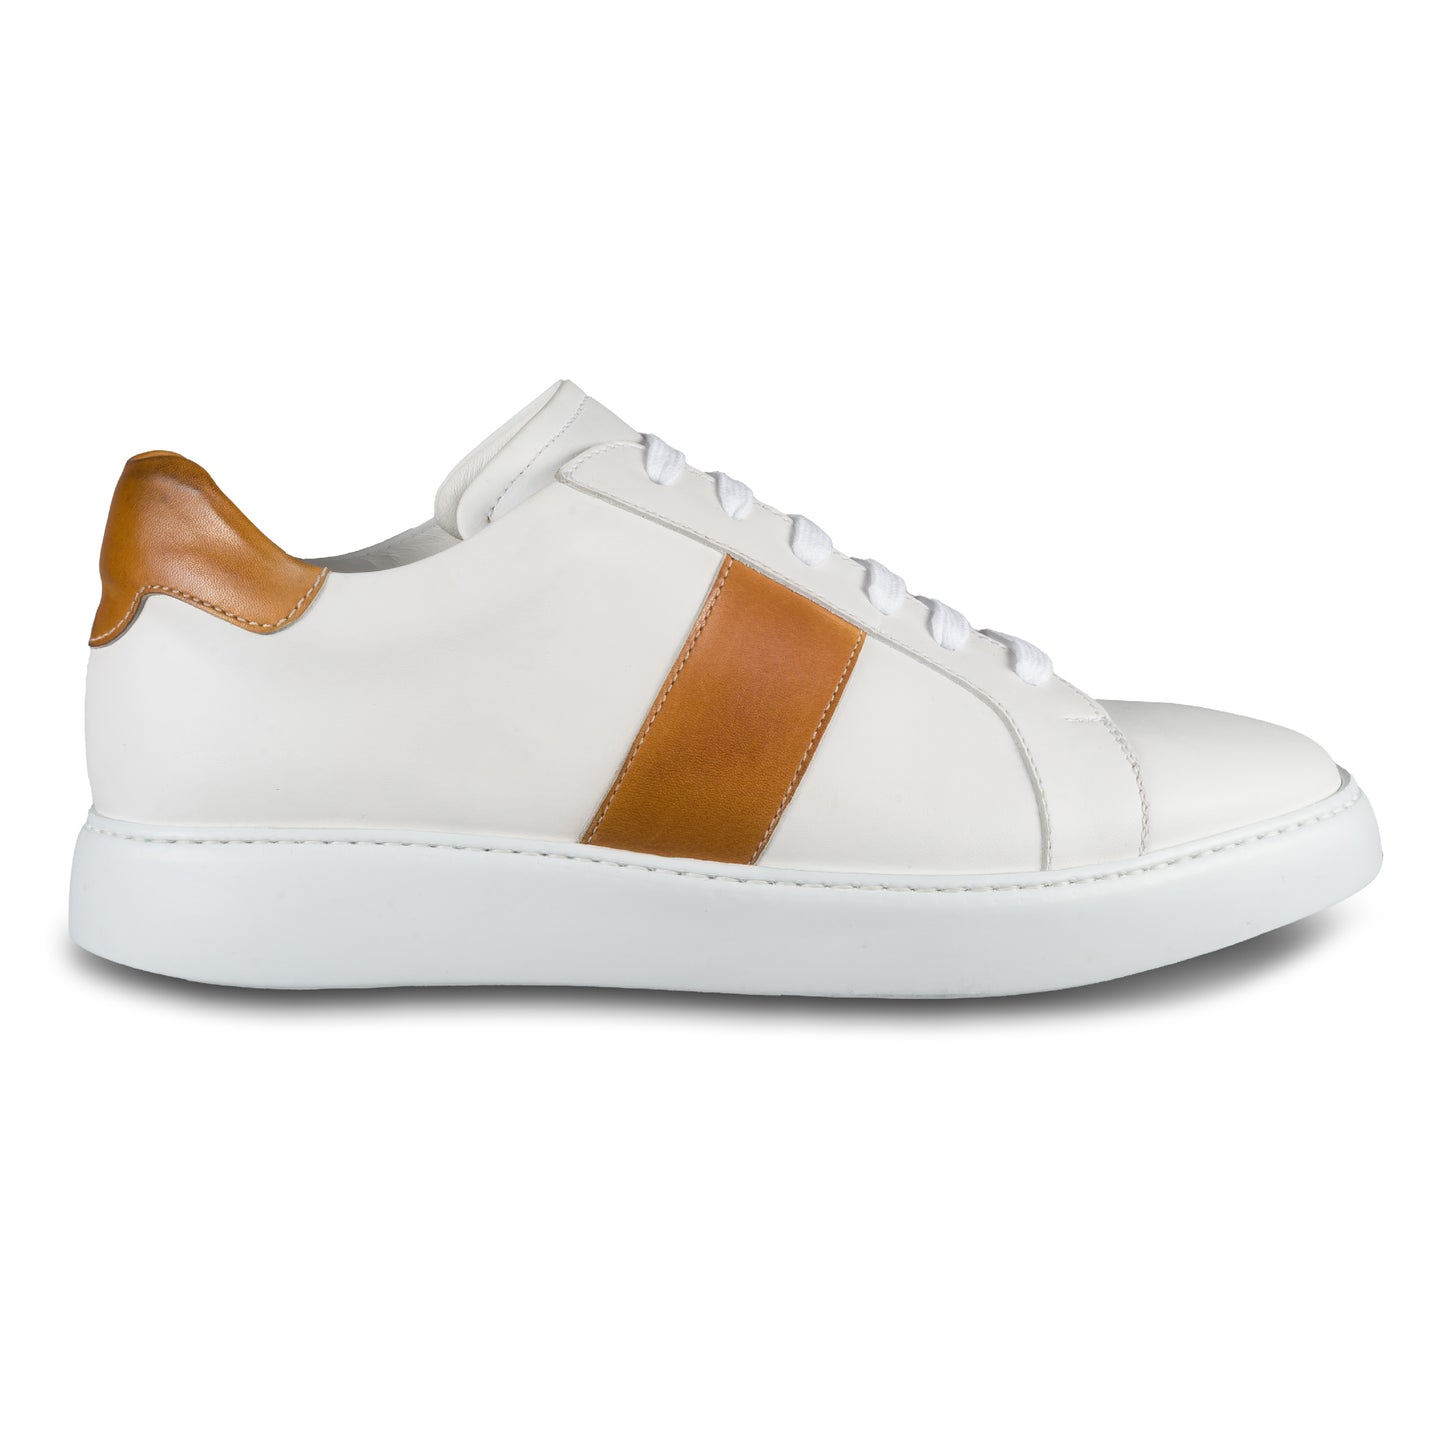 Brecos Herren Kalbsleder Sneaker in weiß mit cognak braun. Leichte, weiße Gummisohle. Handgefertigt in Italien. Ansicht der Außenseite rechter Schuh. 